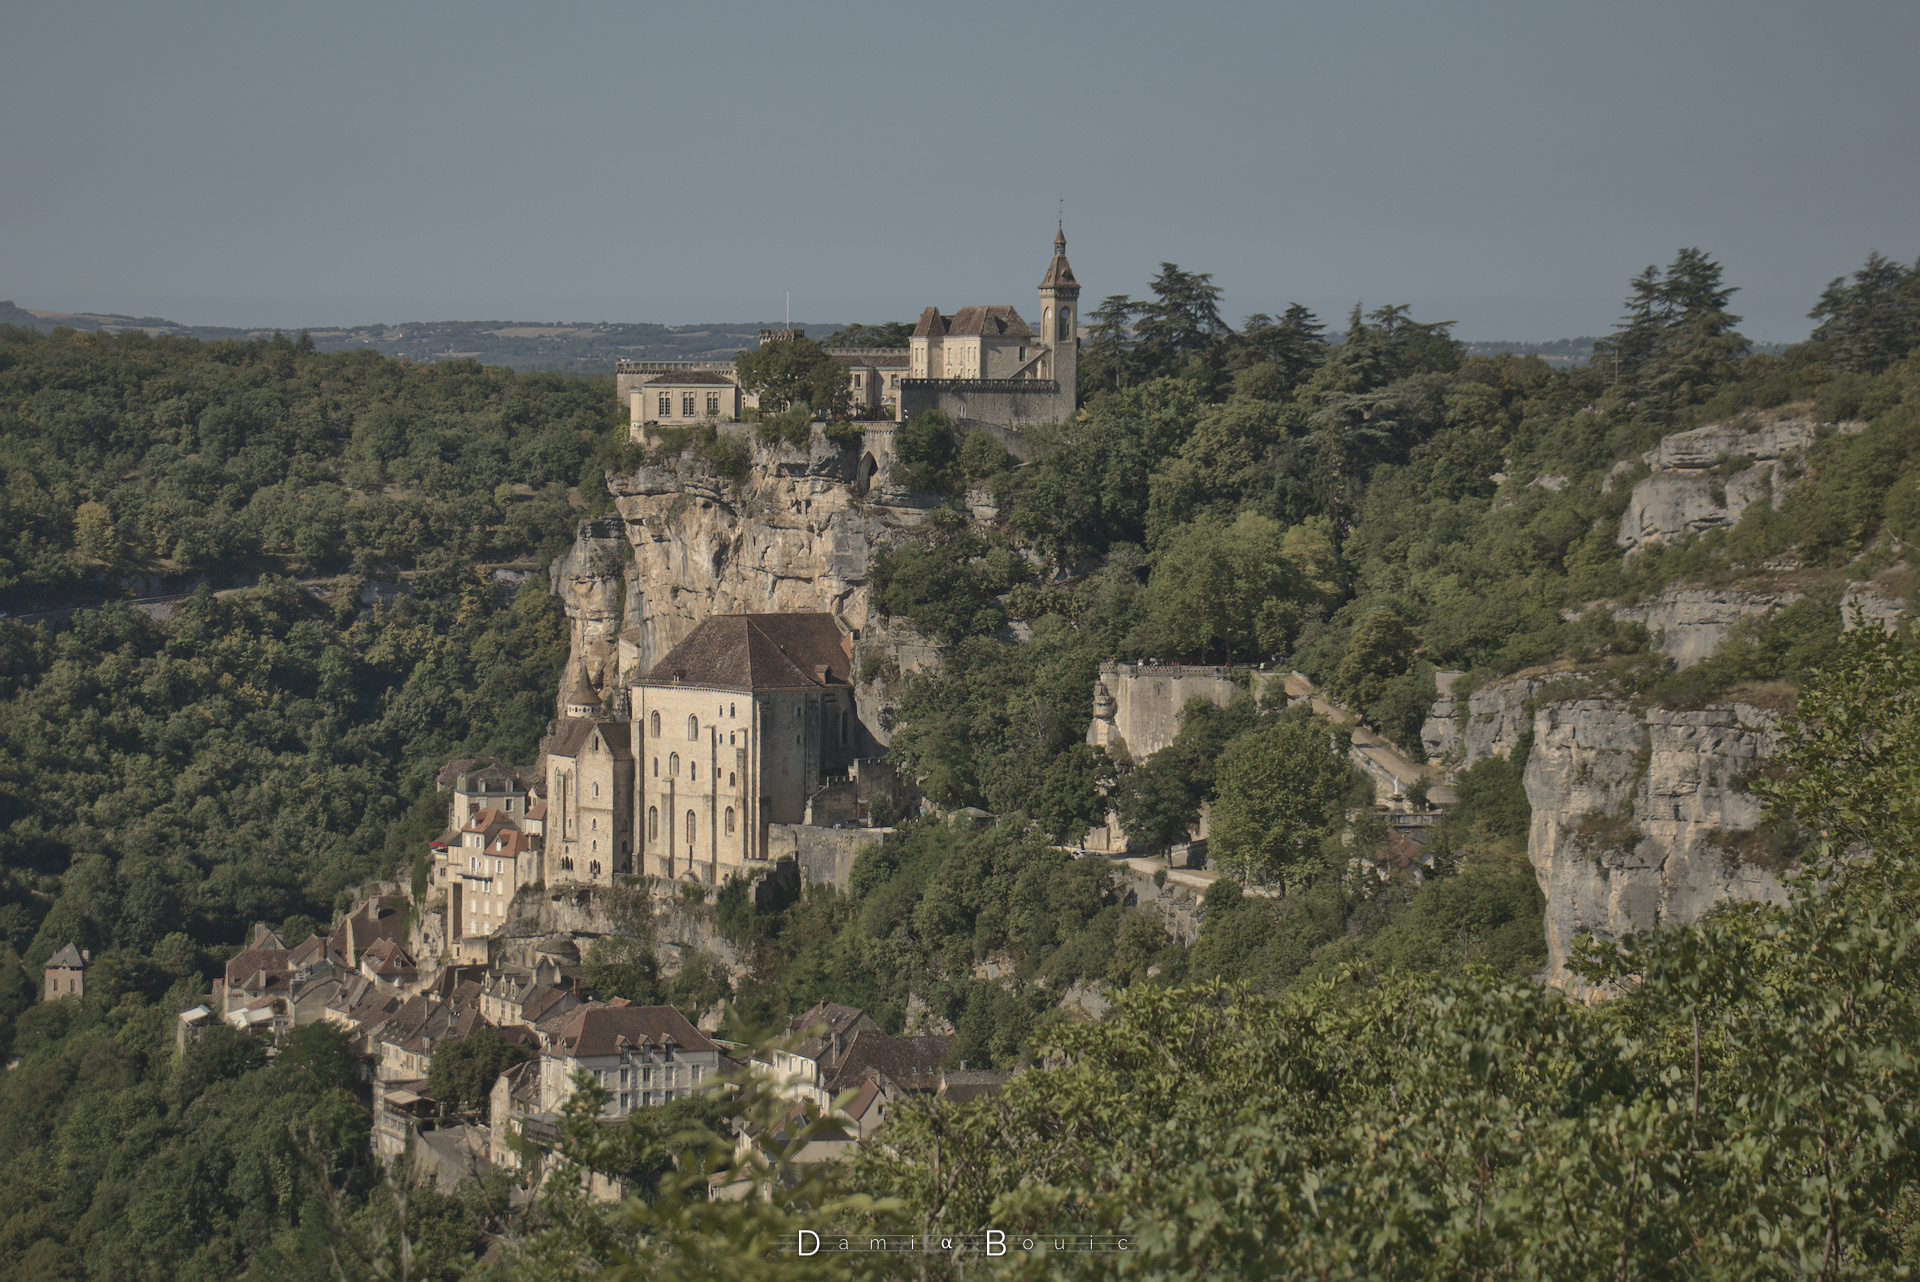 Cité médiévale accrochée à une falaise calcaire, un peu masquée par les arbres et les buissons. A gauche l'autre côté de la vallée, et au milieu l'horizon, lointain